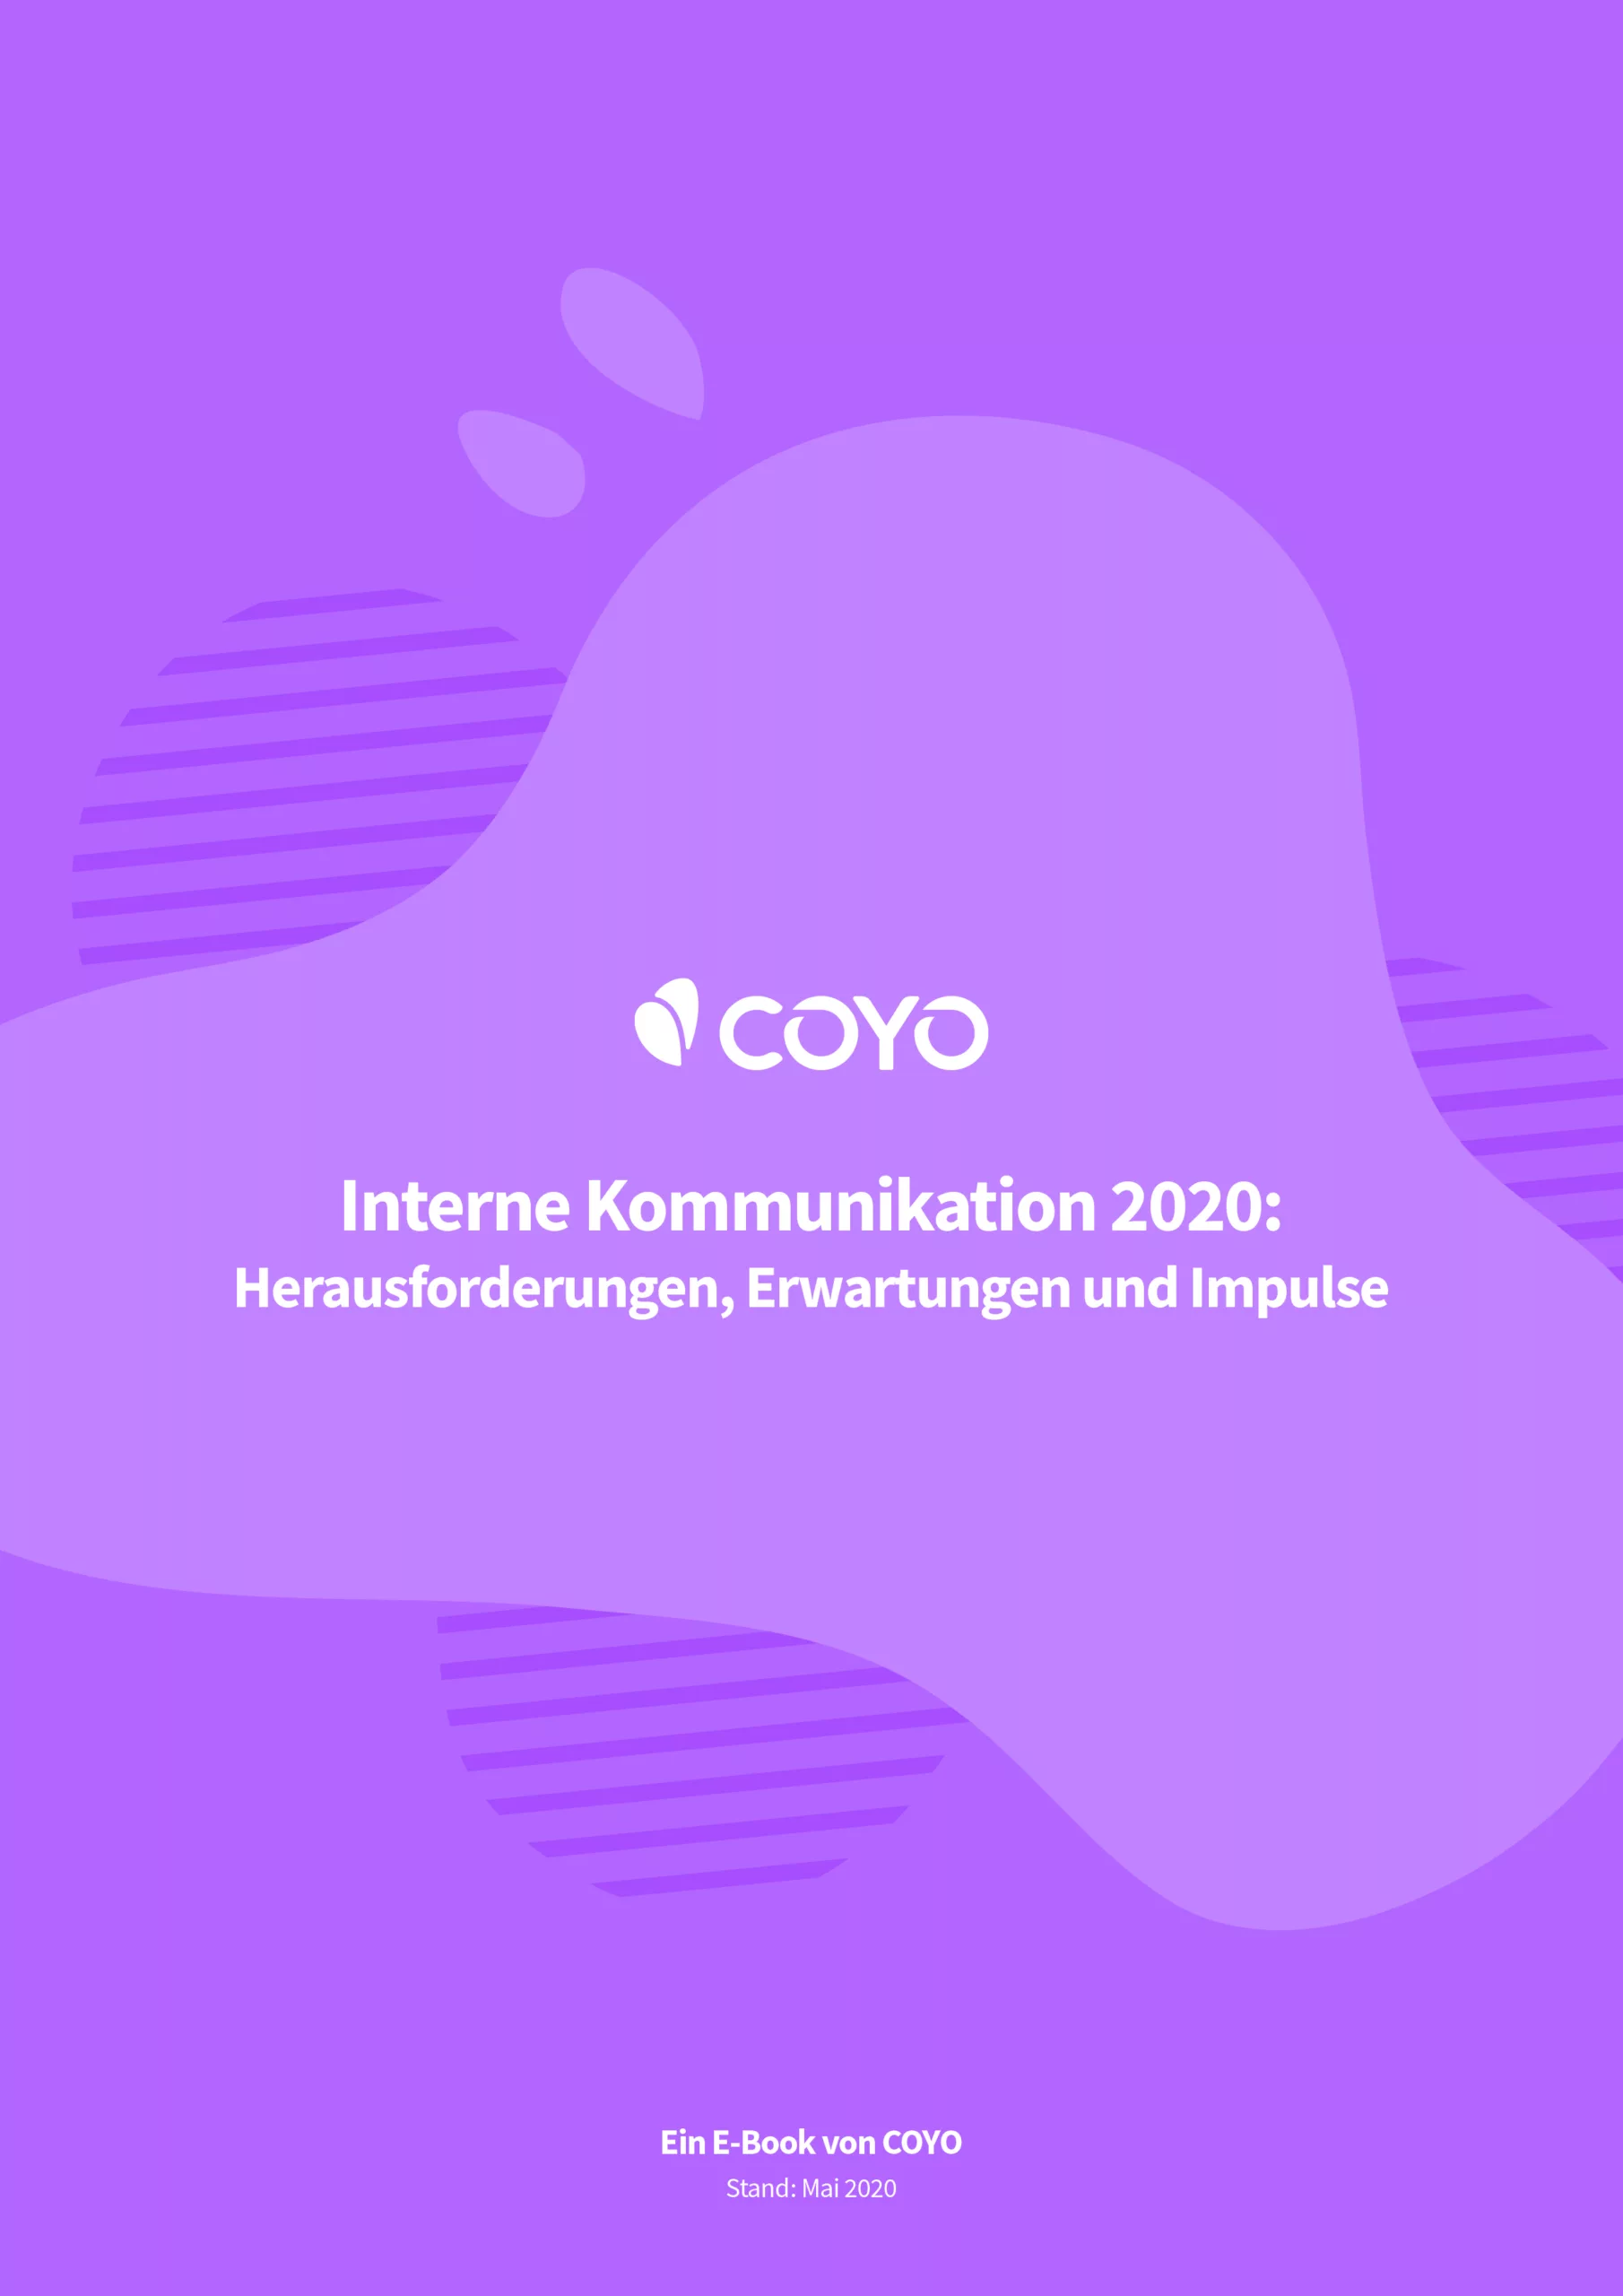 Interne Kommunikation 2020: Herausforderungen, Erwartungen und Impulse (Anzeige)